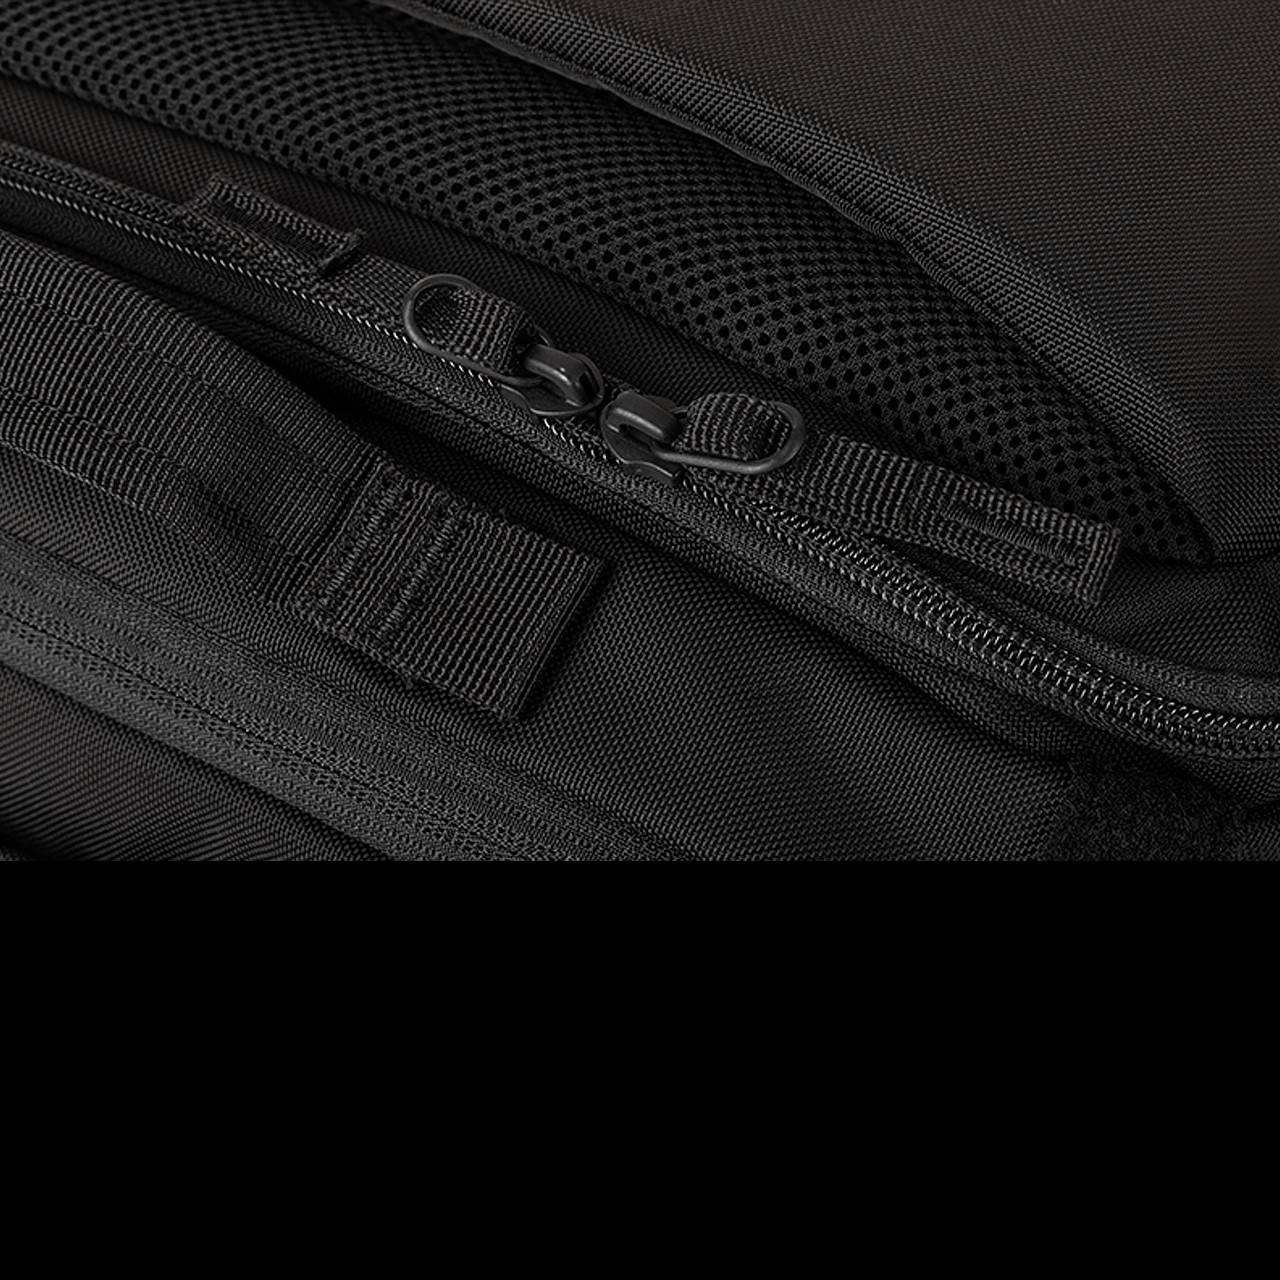 Backpack with 1 Sling, Manufacturer : 5.11, Model : LV10 Utility